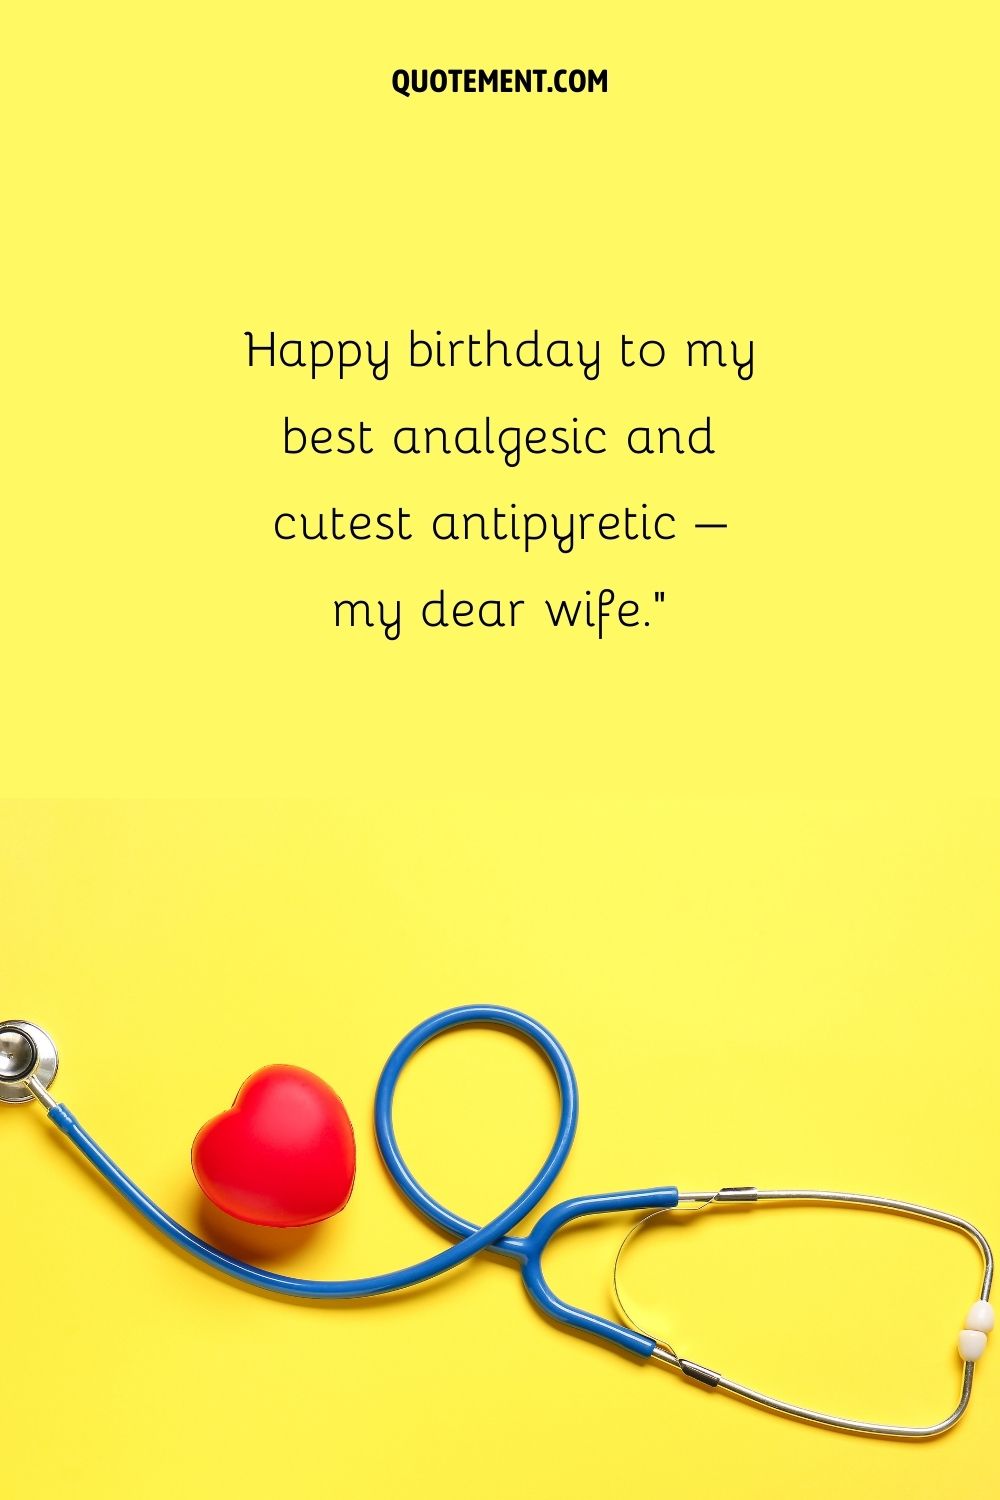 diseño simple imagen de cumpleaños que representa divertido feliz cumpleaños doctor esposa deseo